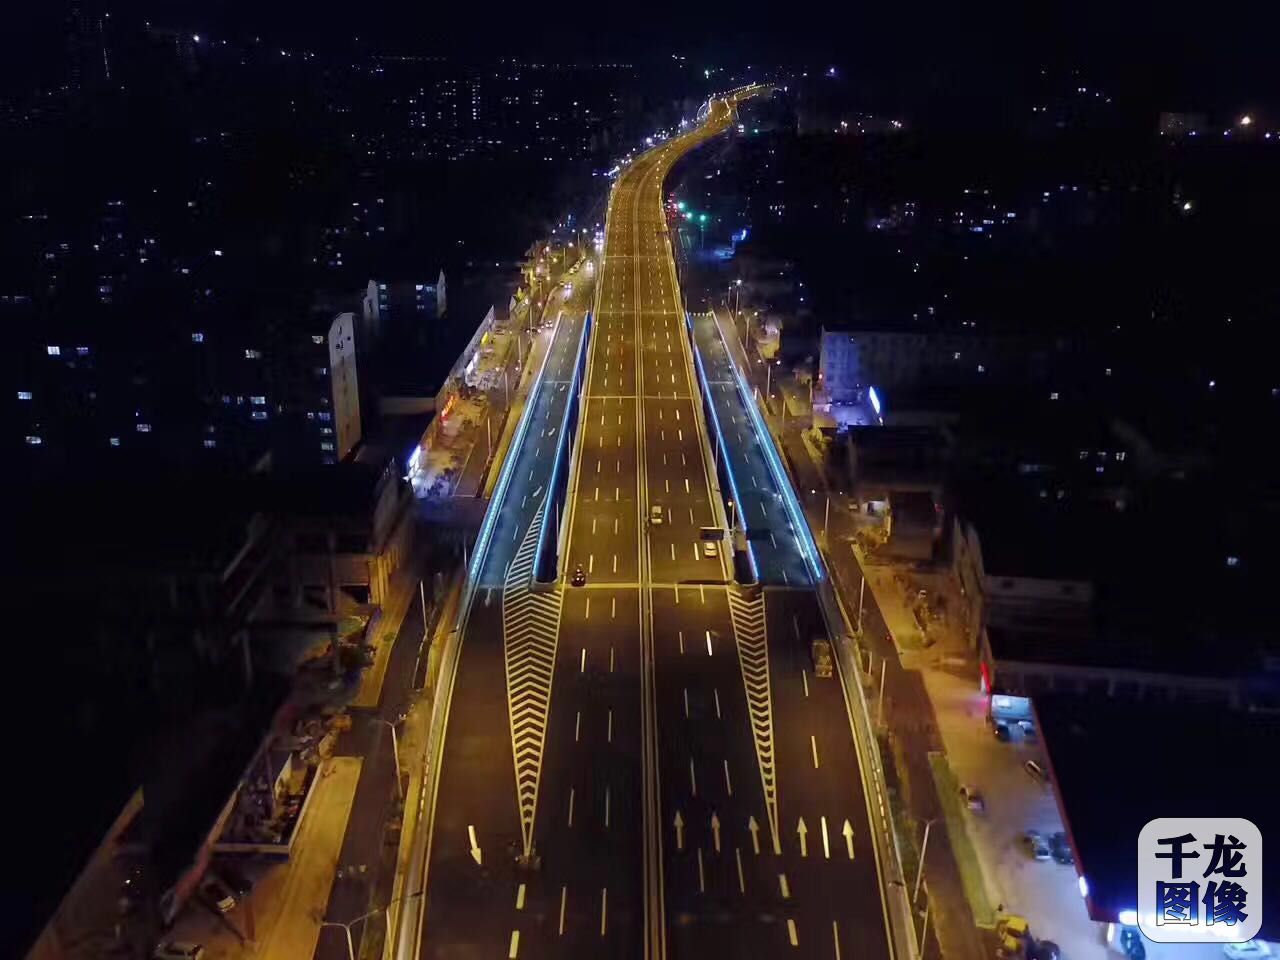 由北京城建道桥建设集团施工的济广高速济南连接线一期工程，经15个月的紧张施工将在6月30日正式通车。济广高速济南连接线PPP项目工程总造价11.248亿元，长8.5公里。